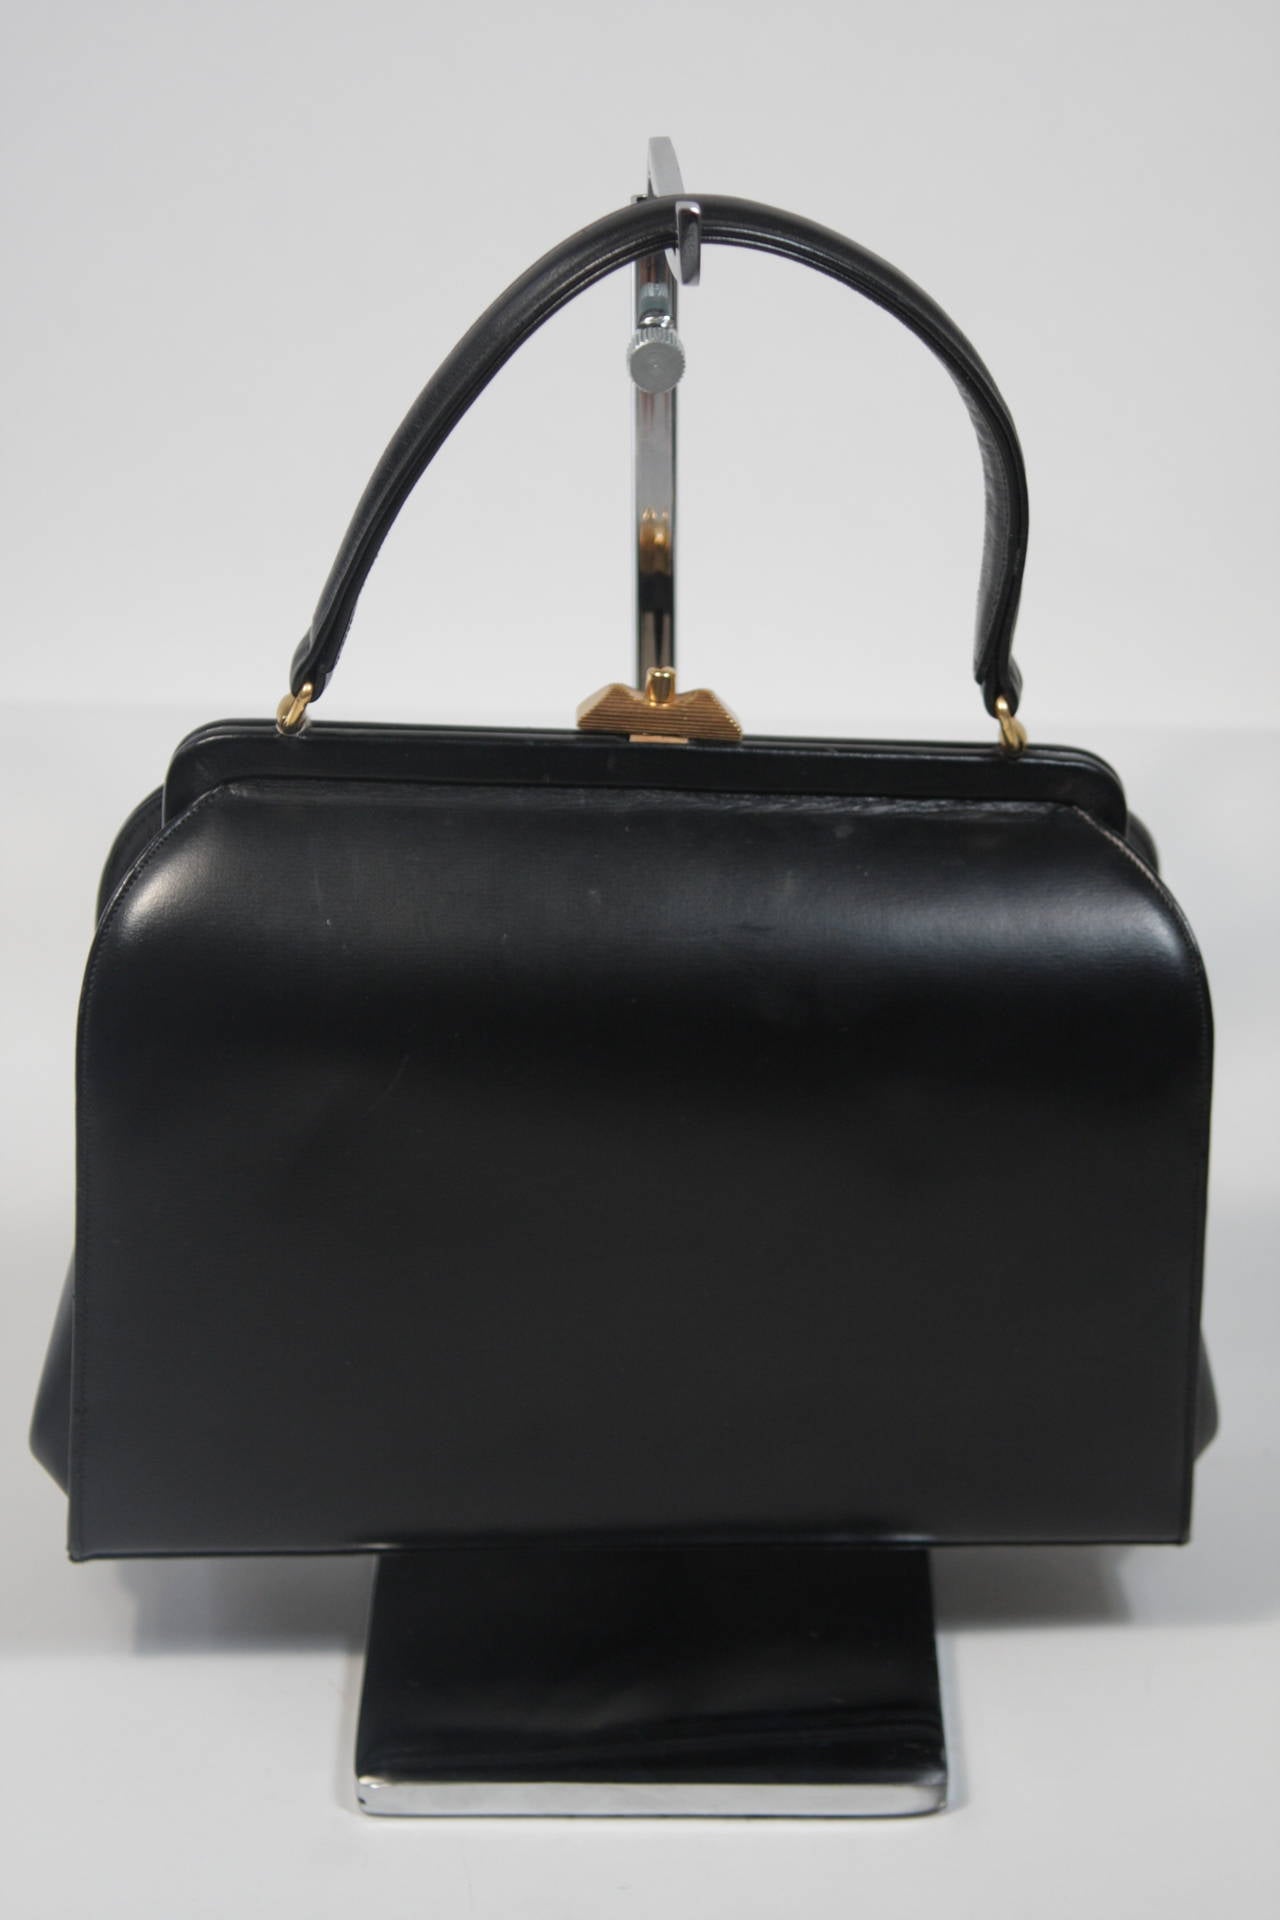 Saks Fifth Avenue Leather and Zebra Print Hide Frame Handbag For Sale at 1stdibs